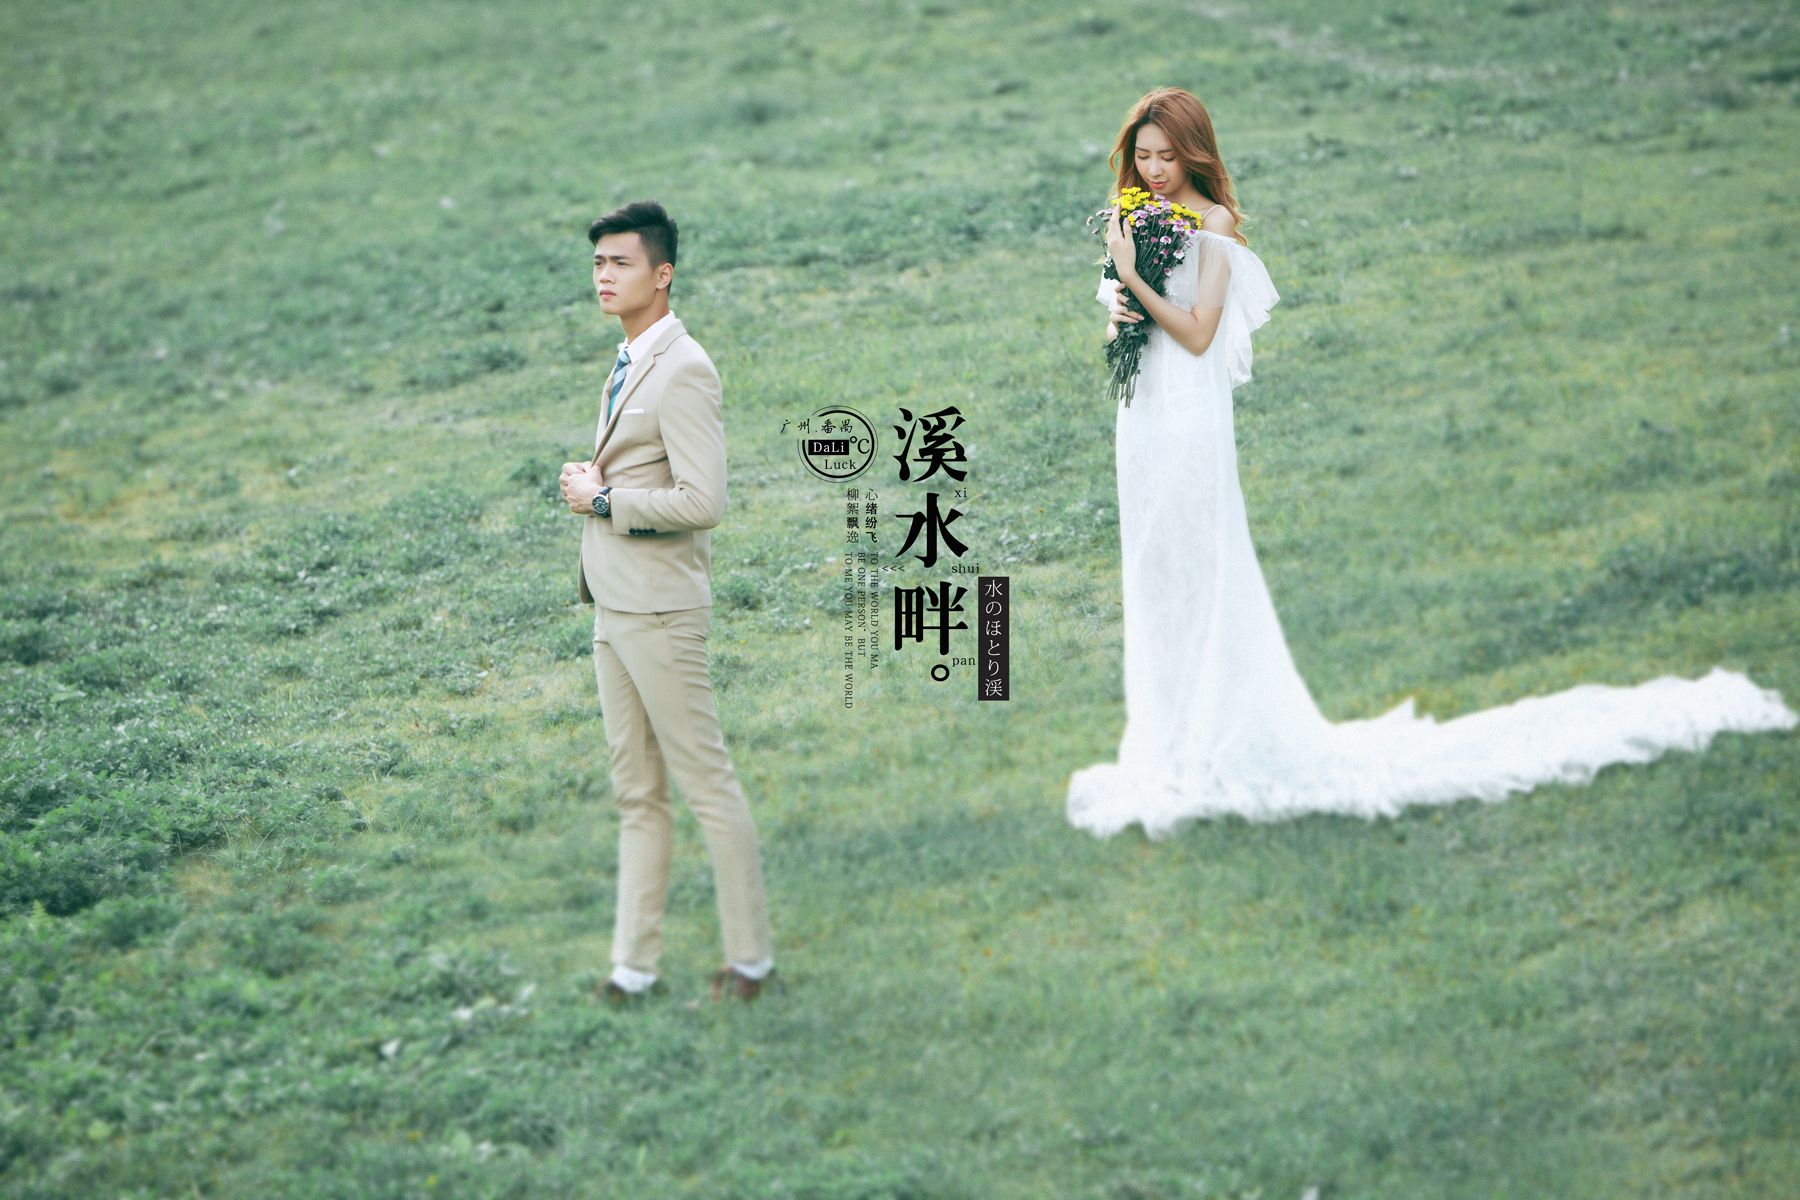 2017年7月广州婚纱照图片,江门婚纱照,婚纱照图片